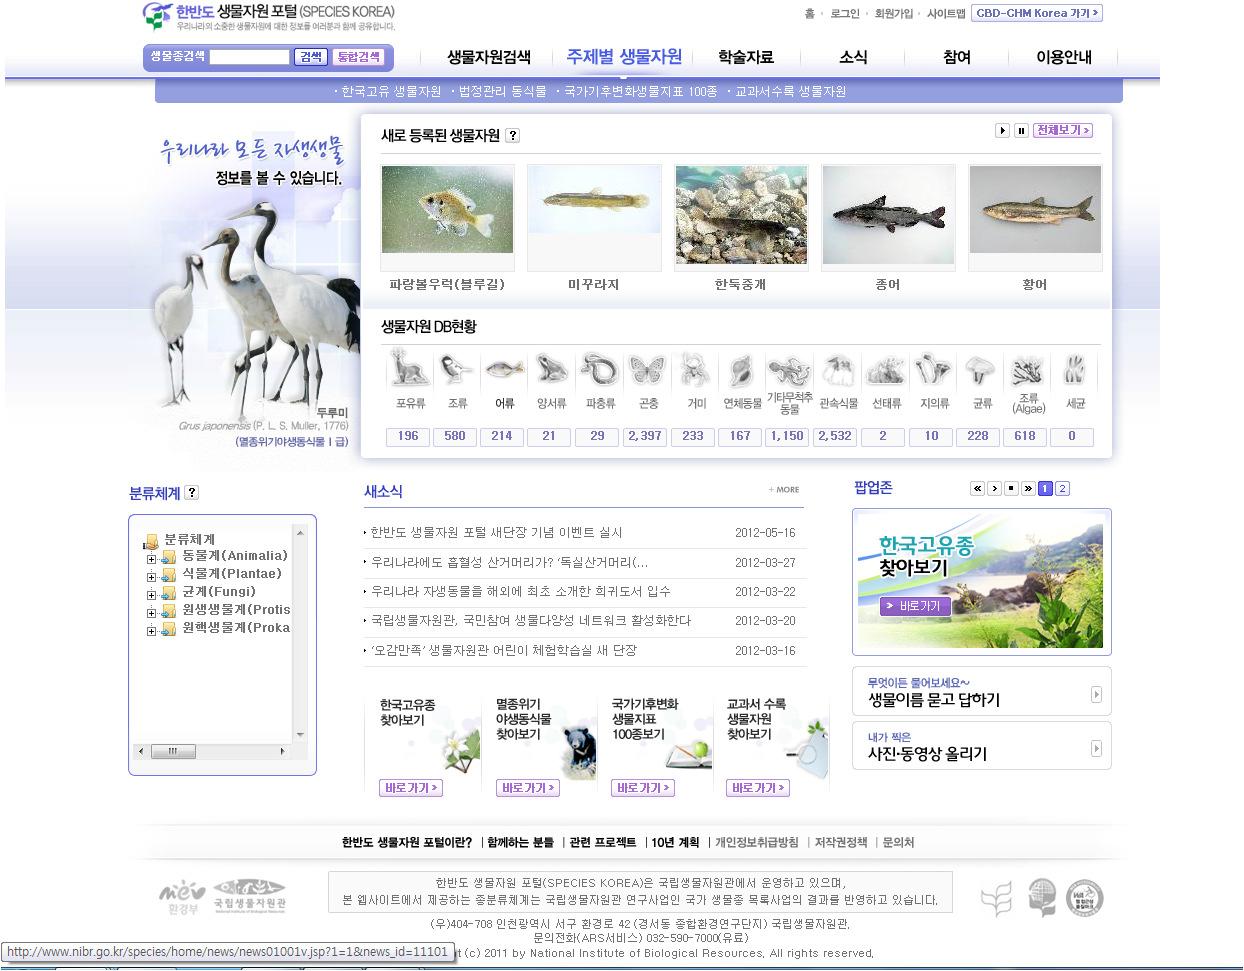 환경부의 「한반도생물자원포털」 (Species KOREA) 홈페이지